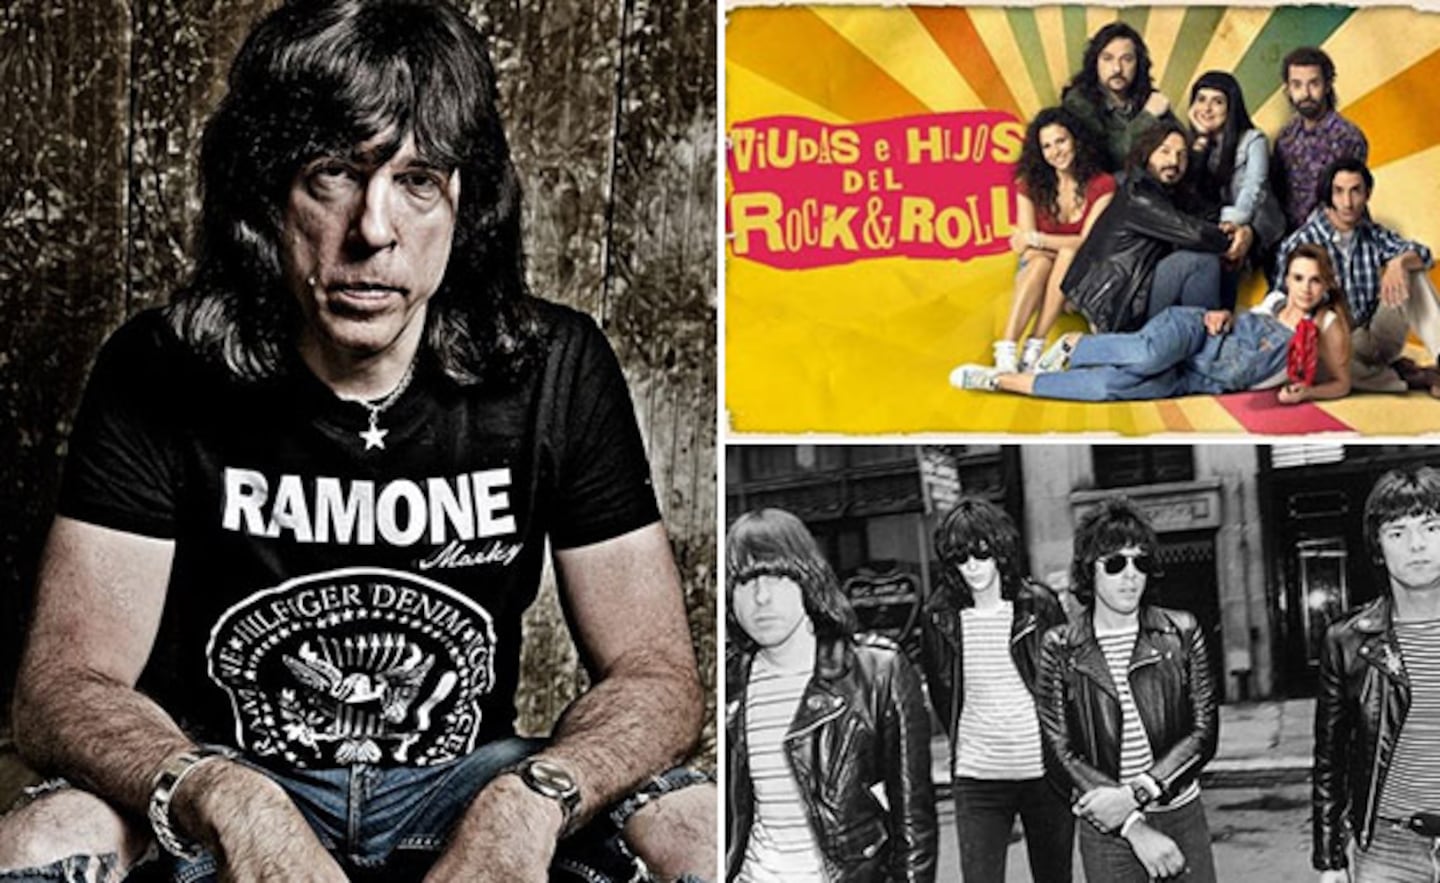 Marky Ramone y una participación especial en Viudas e Hijos del Rock & Roll. (Foto: Web)